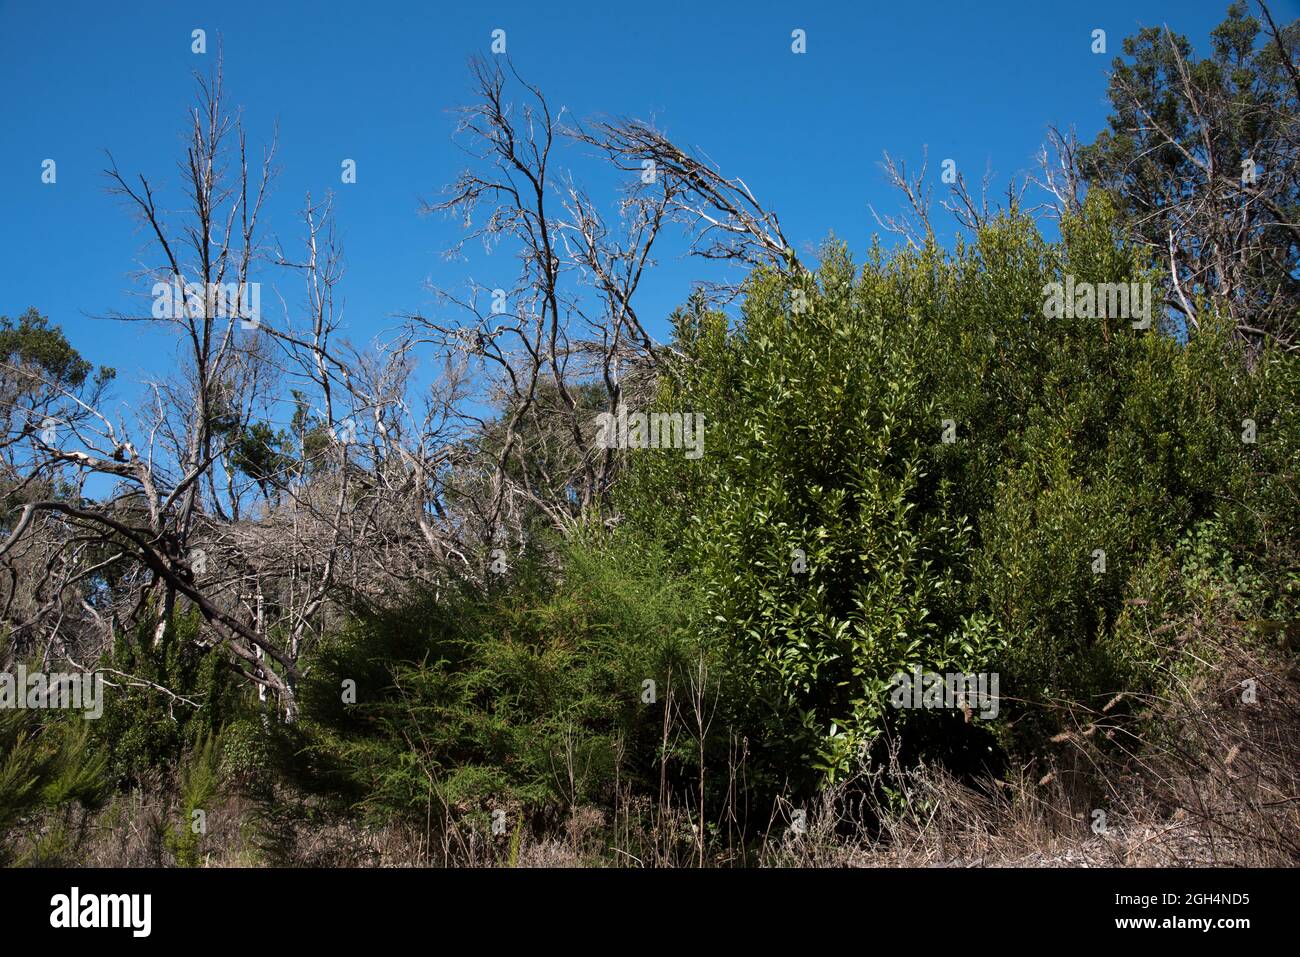 Cinque anni dopo l'incendio della foresta nell'altopiano di la Gomera del 2012 agosto, tra tronchi bruciati, cresce del verde. Foto Stock